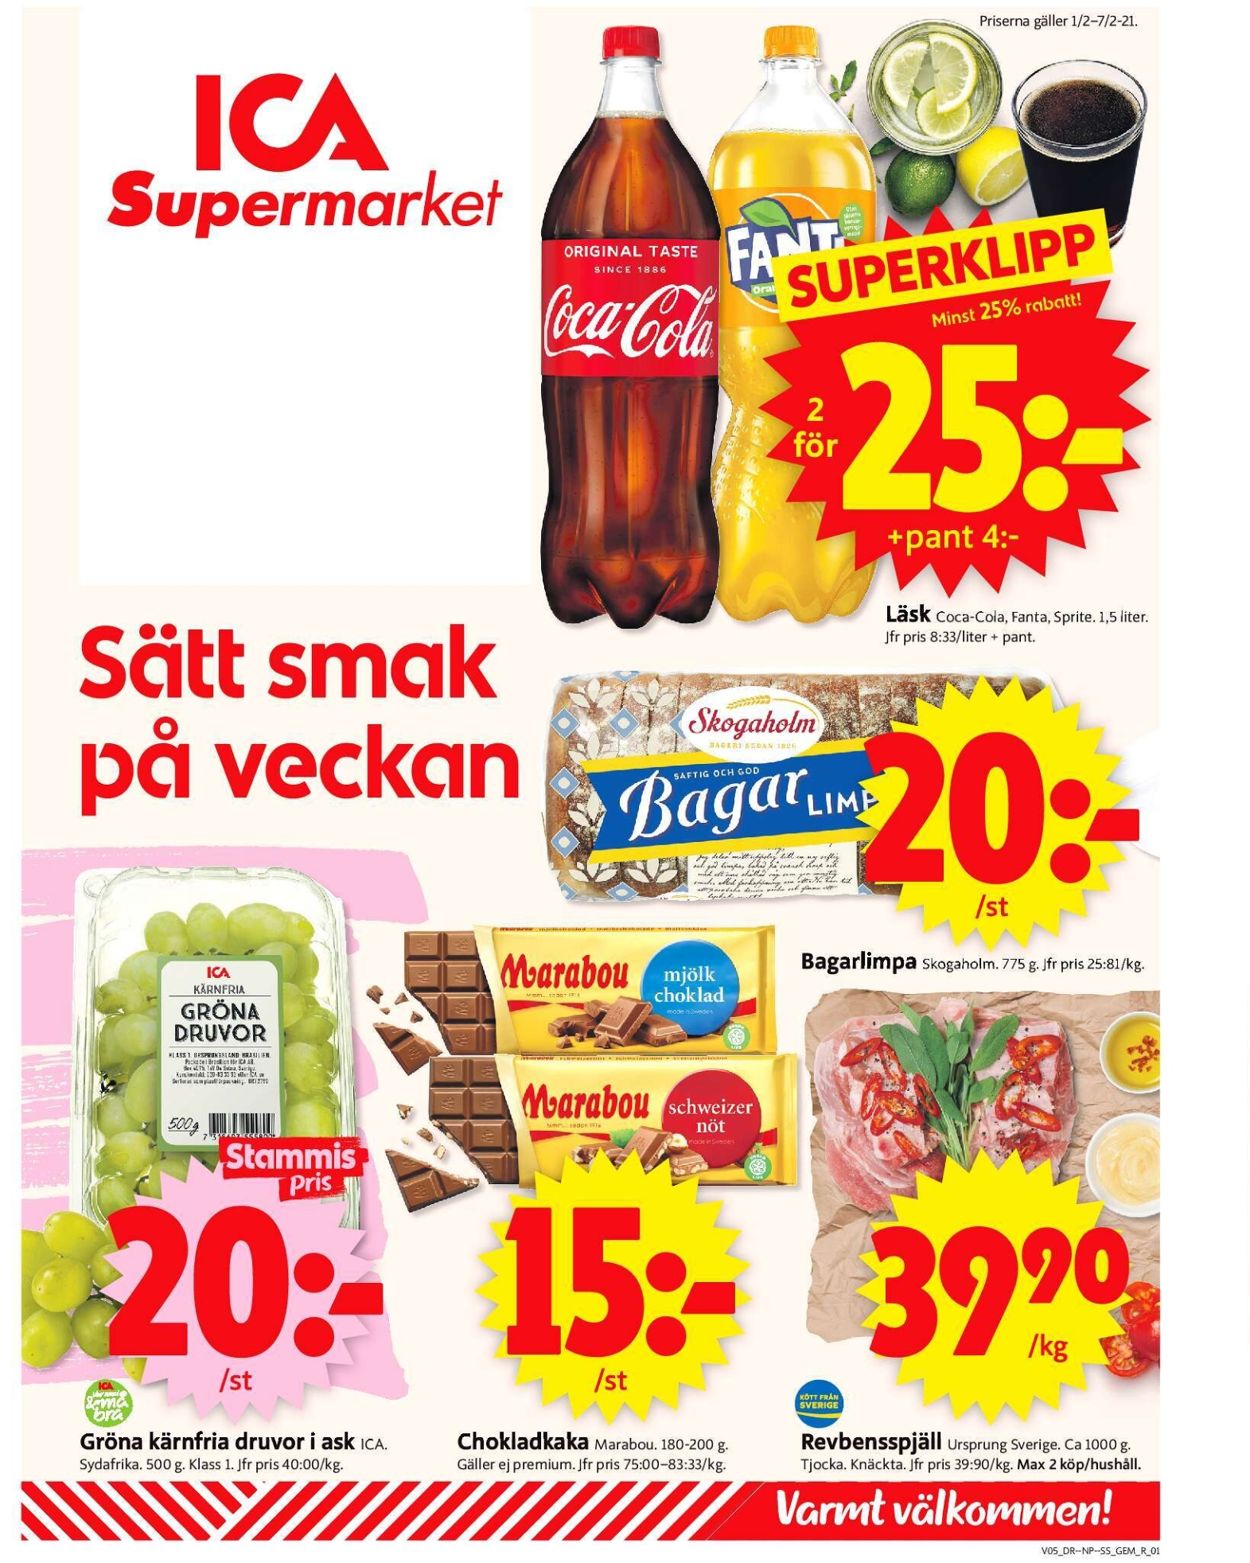 ICA Supermarket - Reklamblad - 01/02-07/02-2021